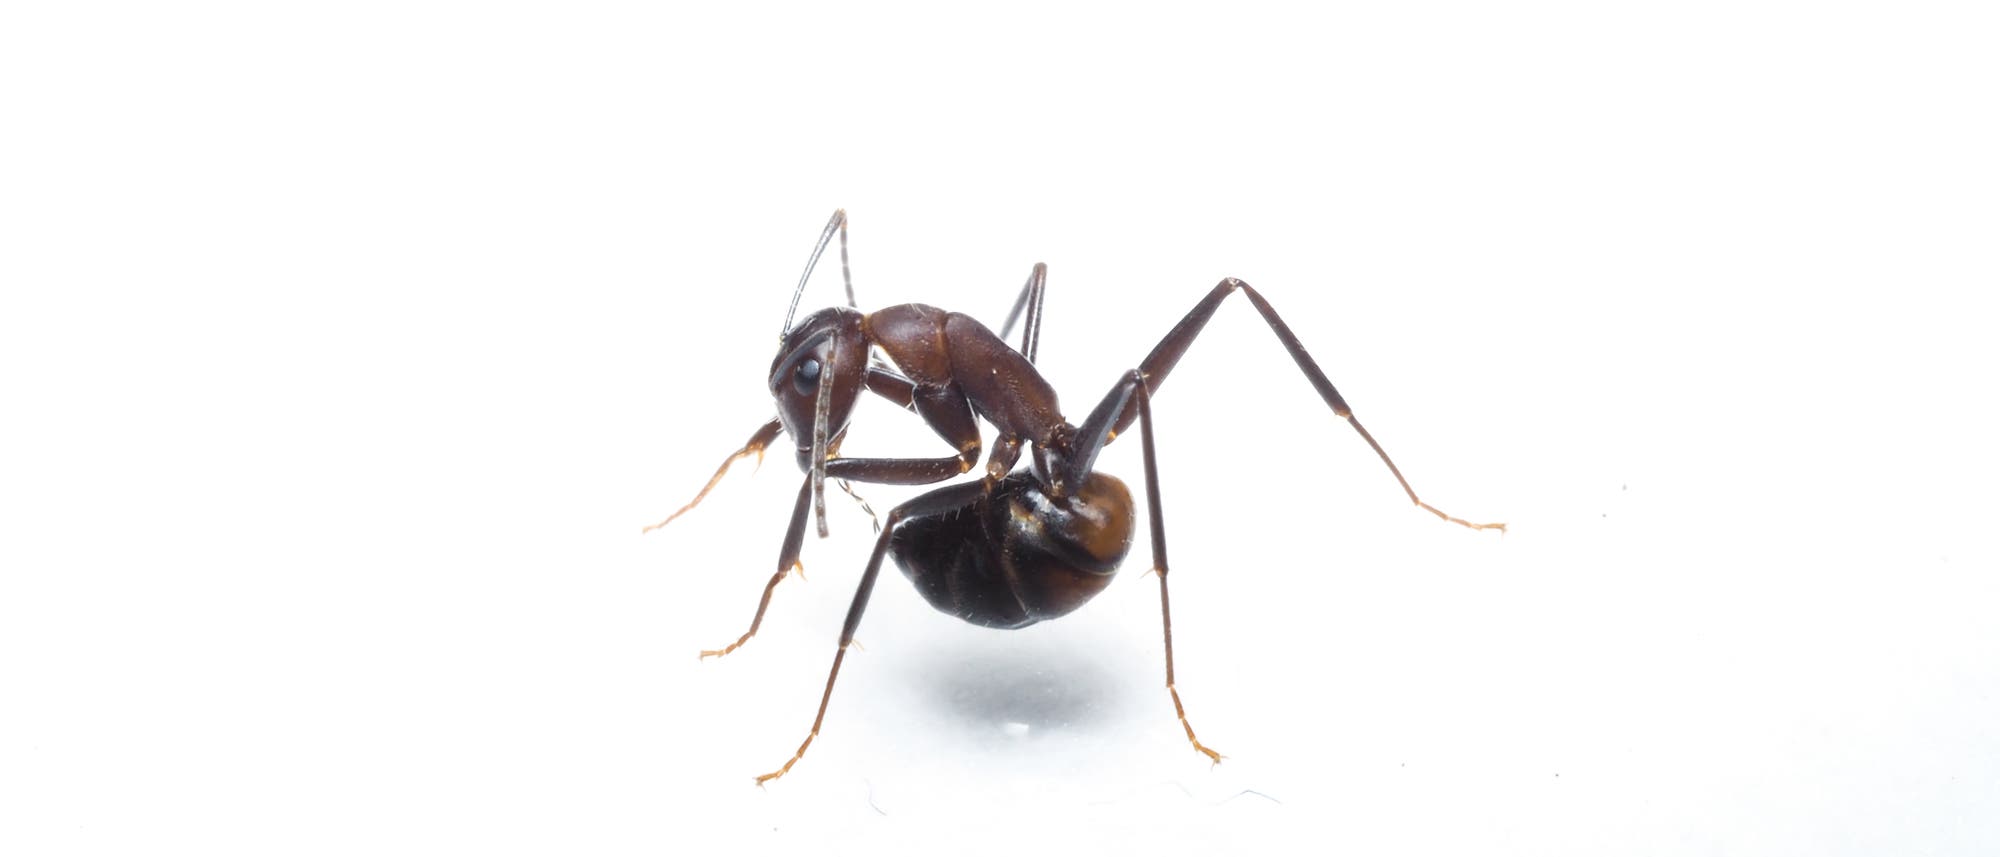 Eine Ameise putzt ihren Hinterleib und nimmt so Säure auf.